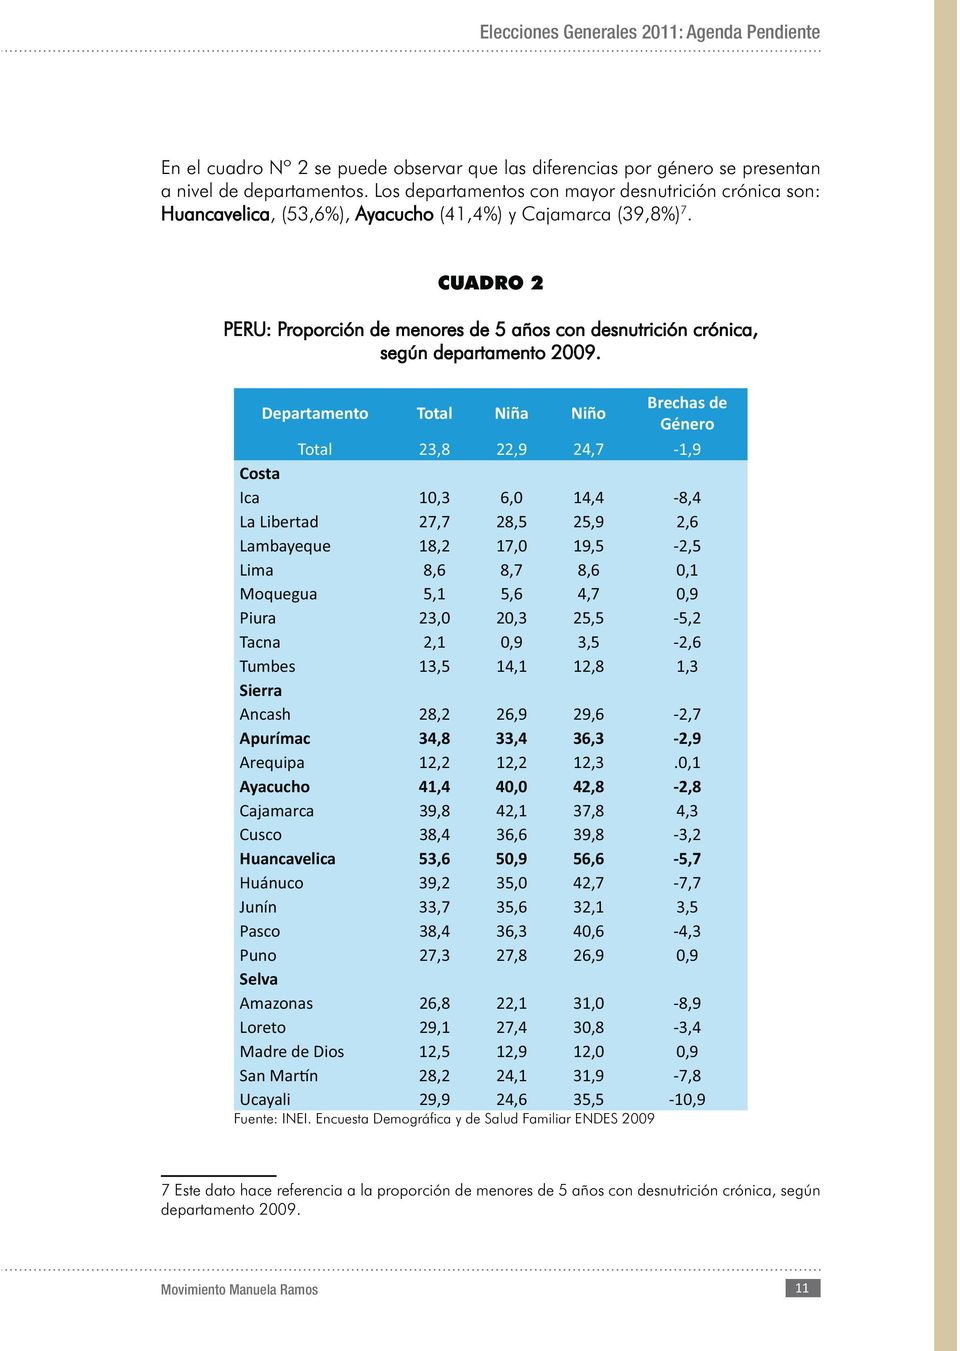 CUADRO 2 PERU: Proporción de menores de 5 años con desnutrición crónica, según departamento 2009.